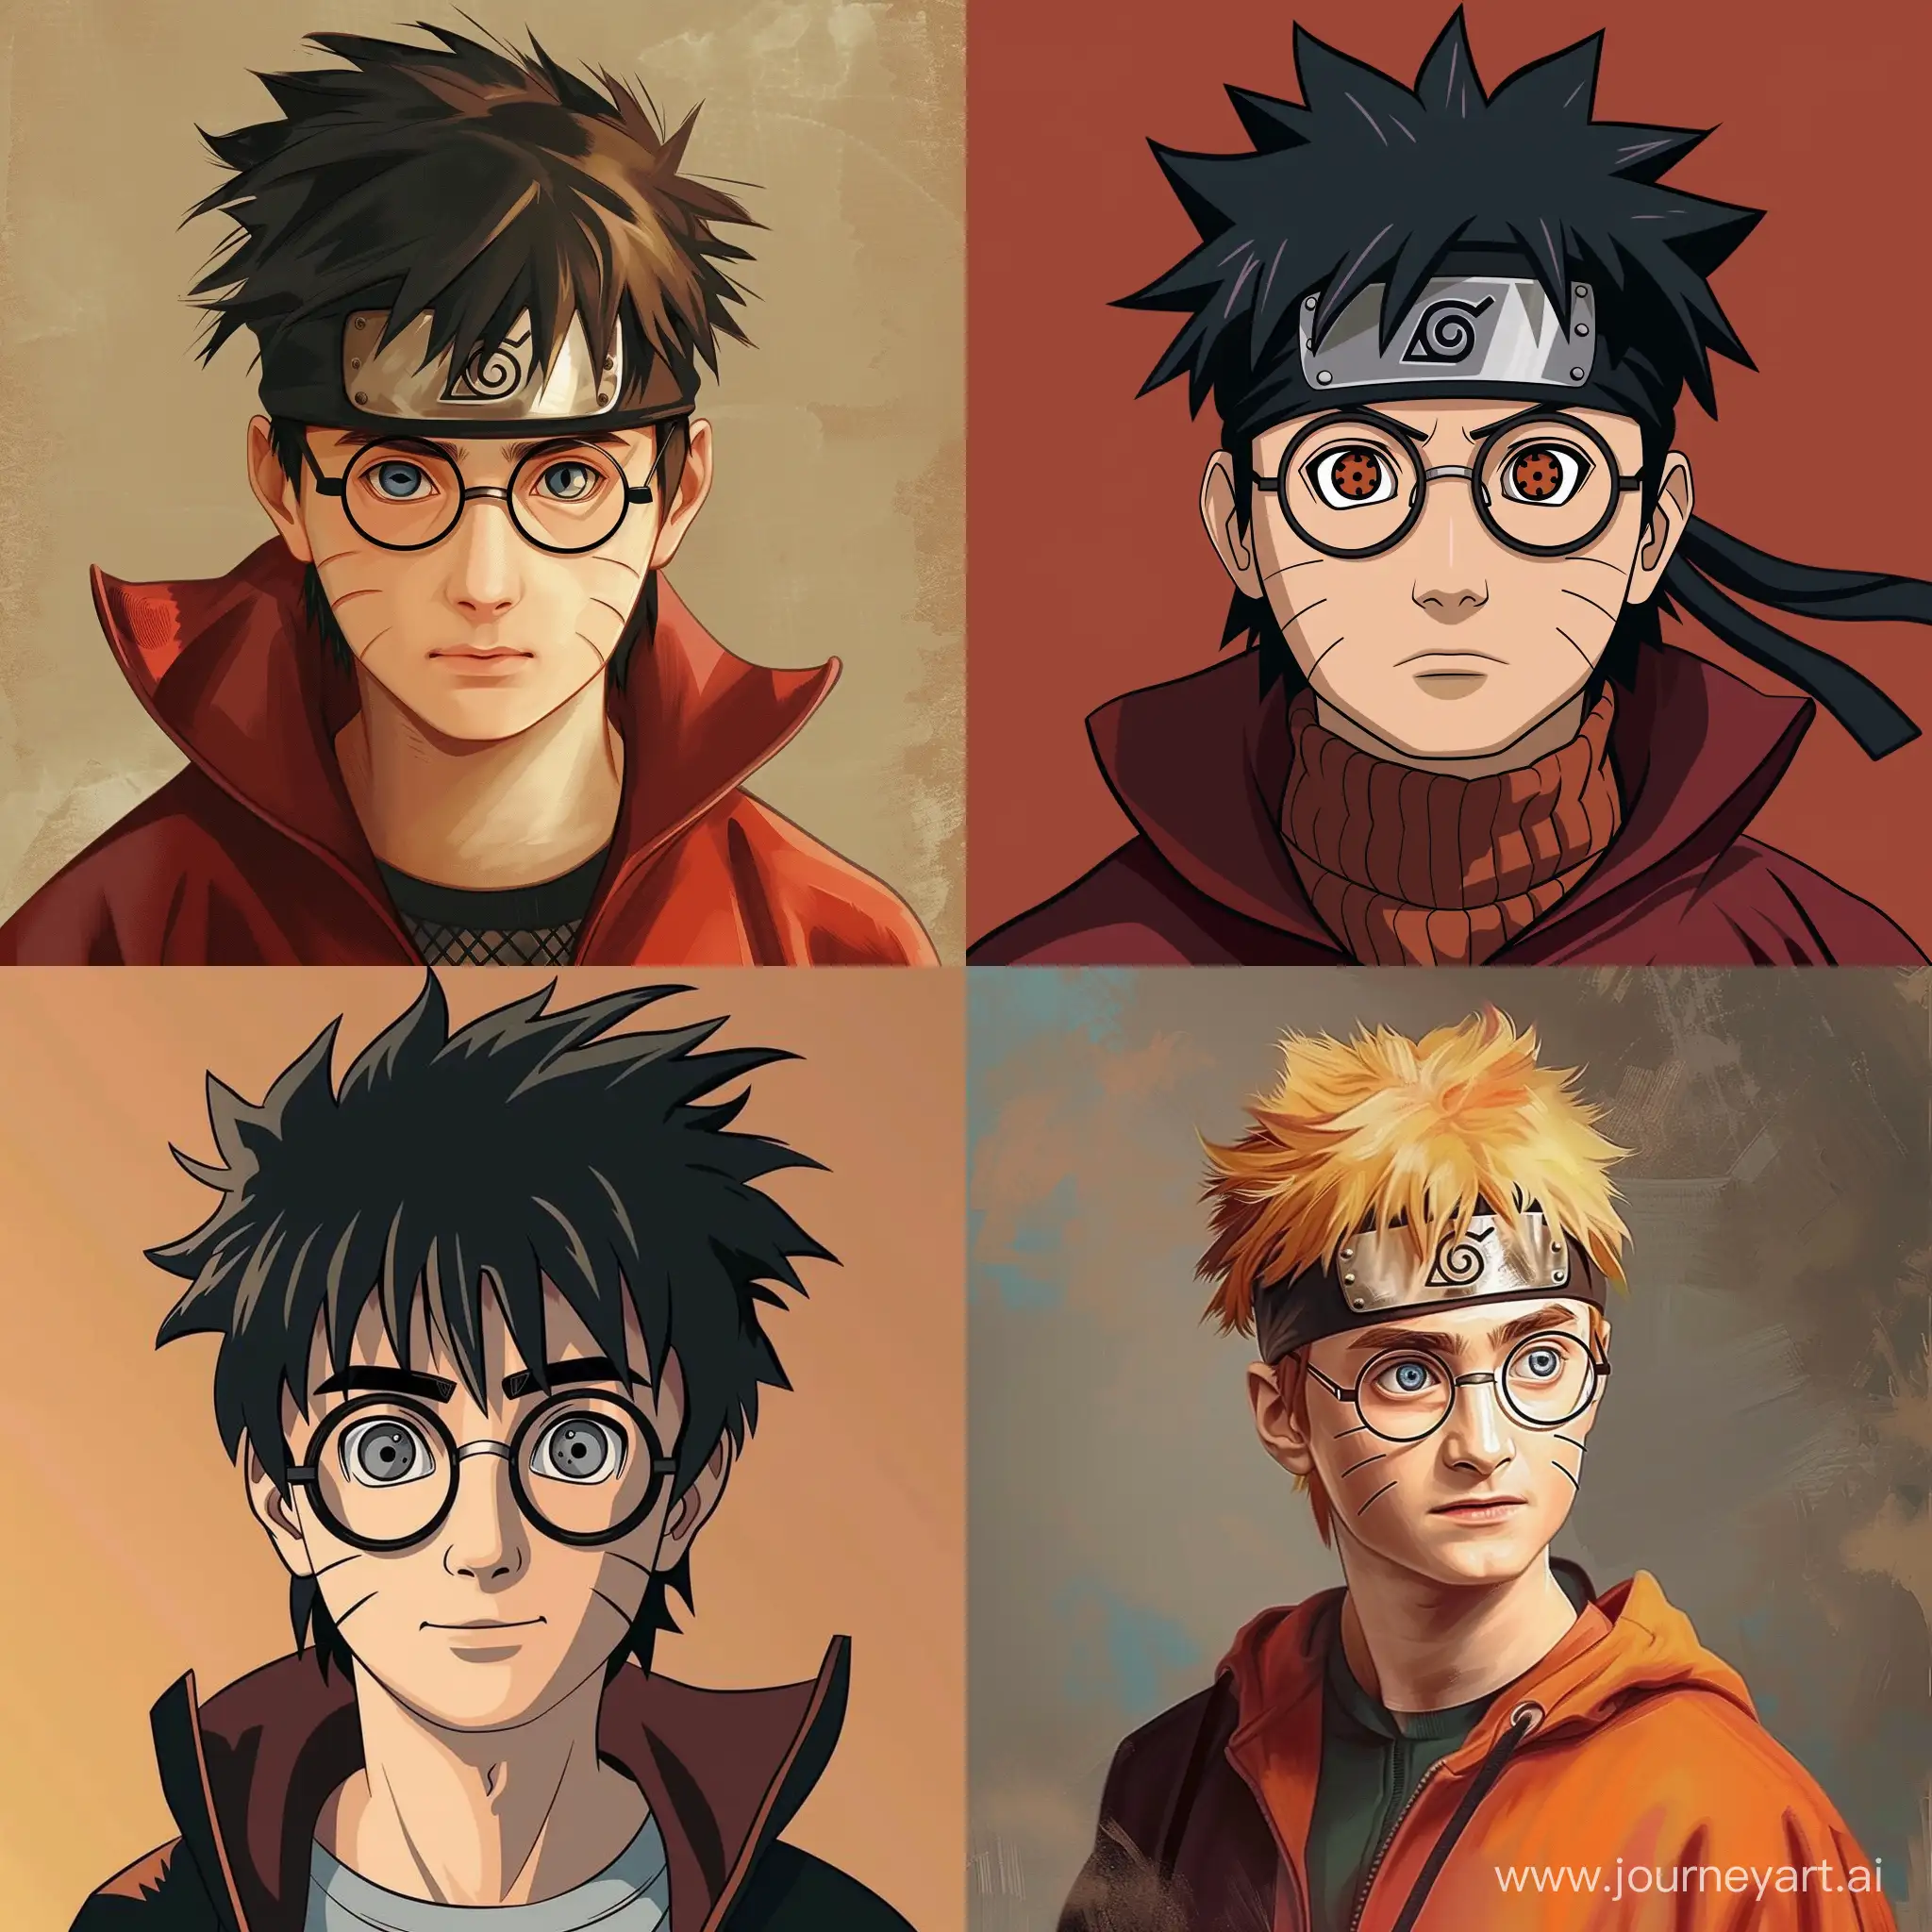 Harry-Potter-Naruto-Crossover-Art-Wizardry-Meets-Ninja-Skills